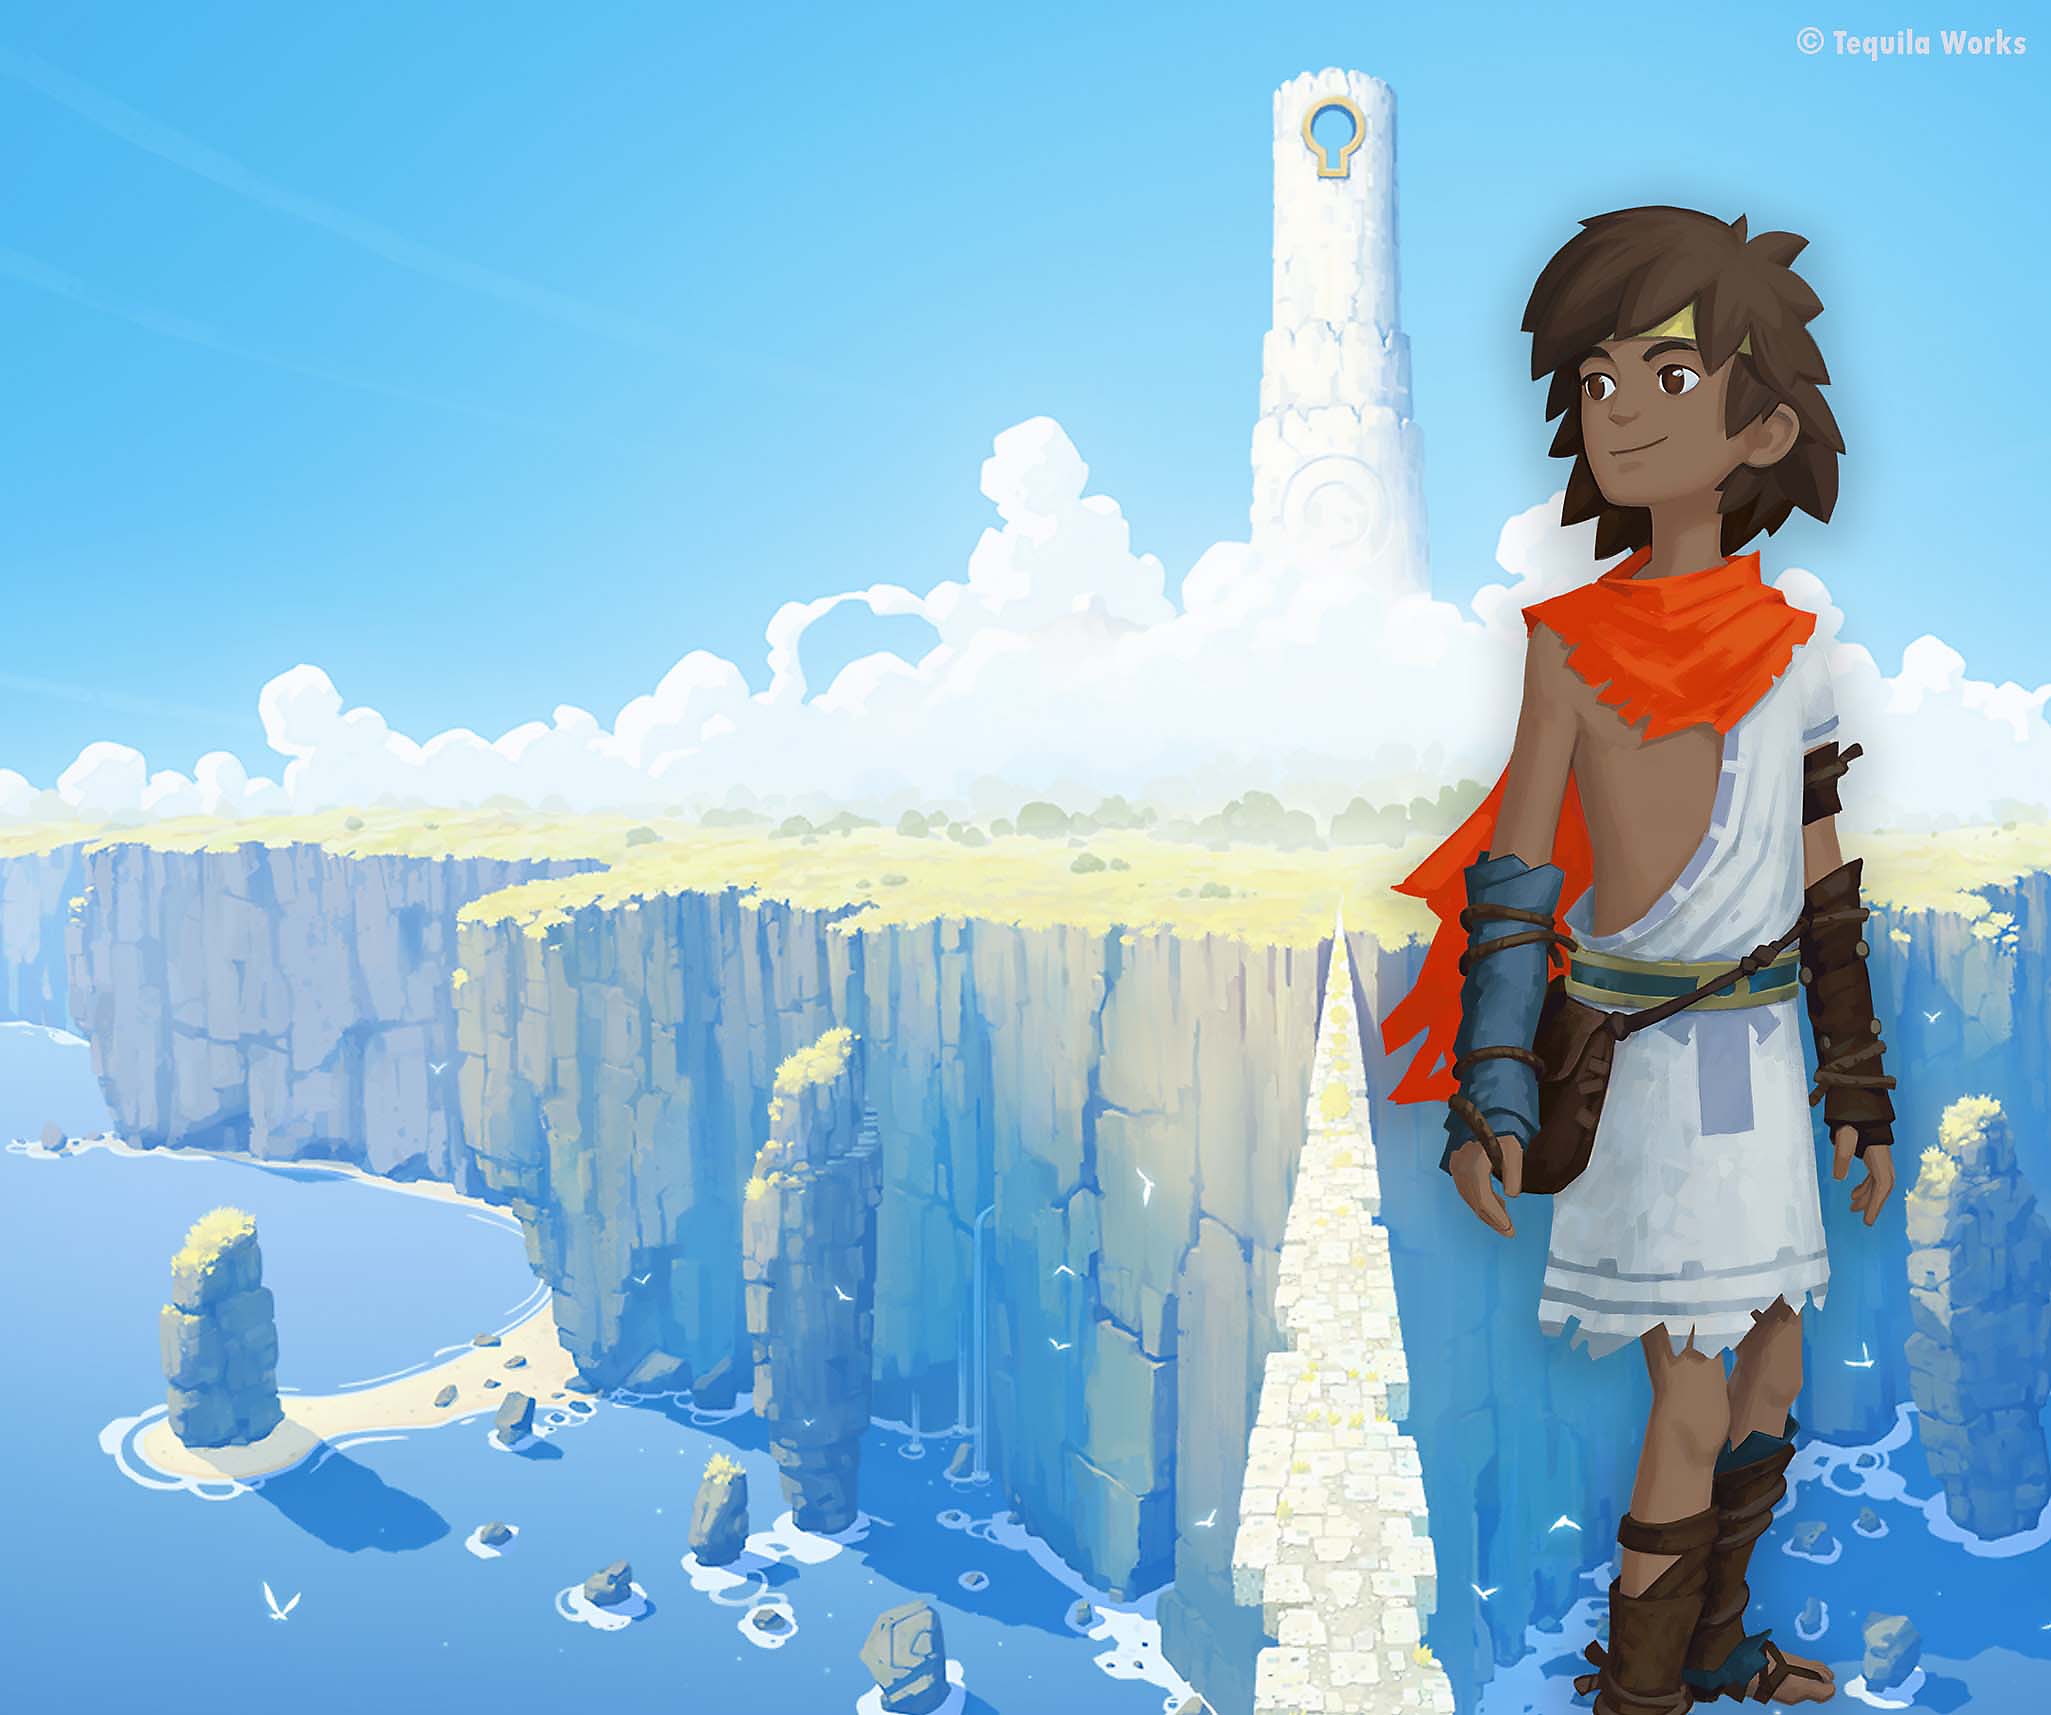 RiME - Illustration montrant le personnage principal superposé sur une immense île recouverte de nuages.